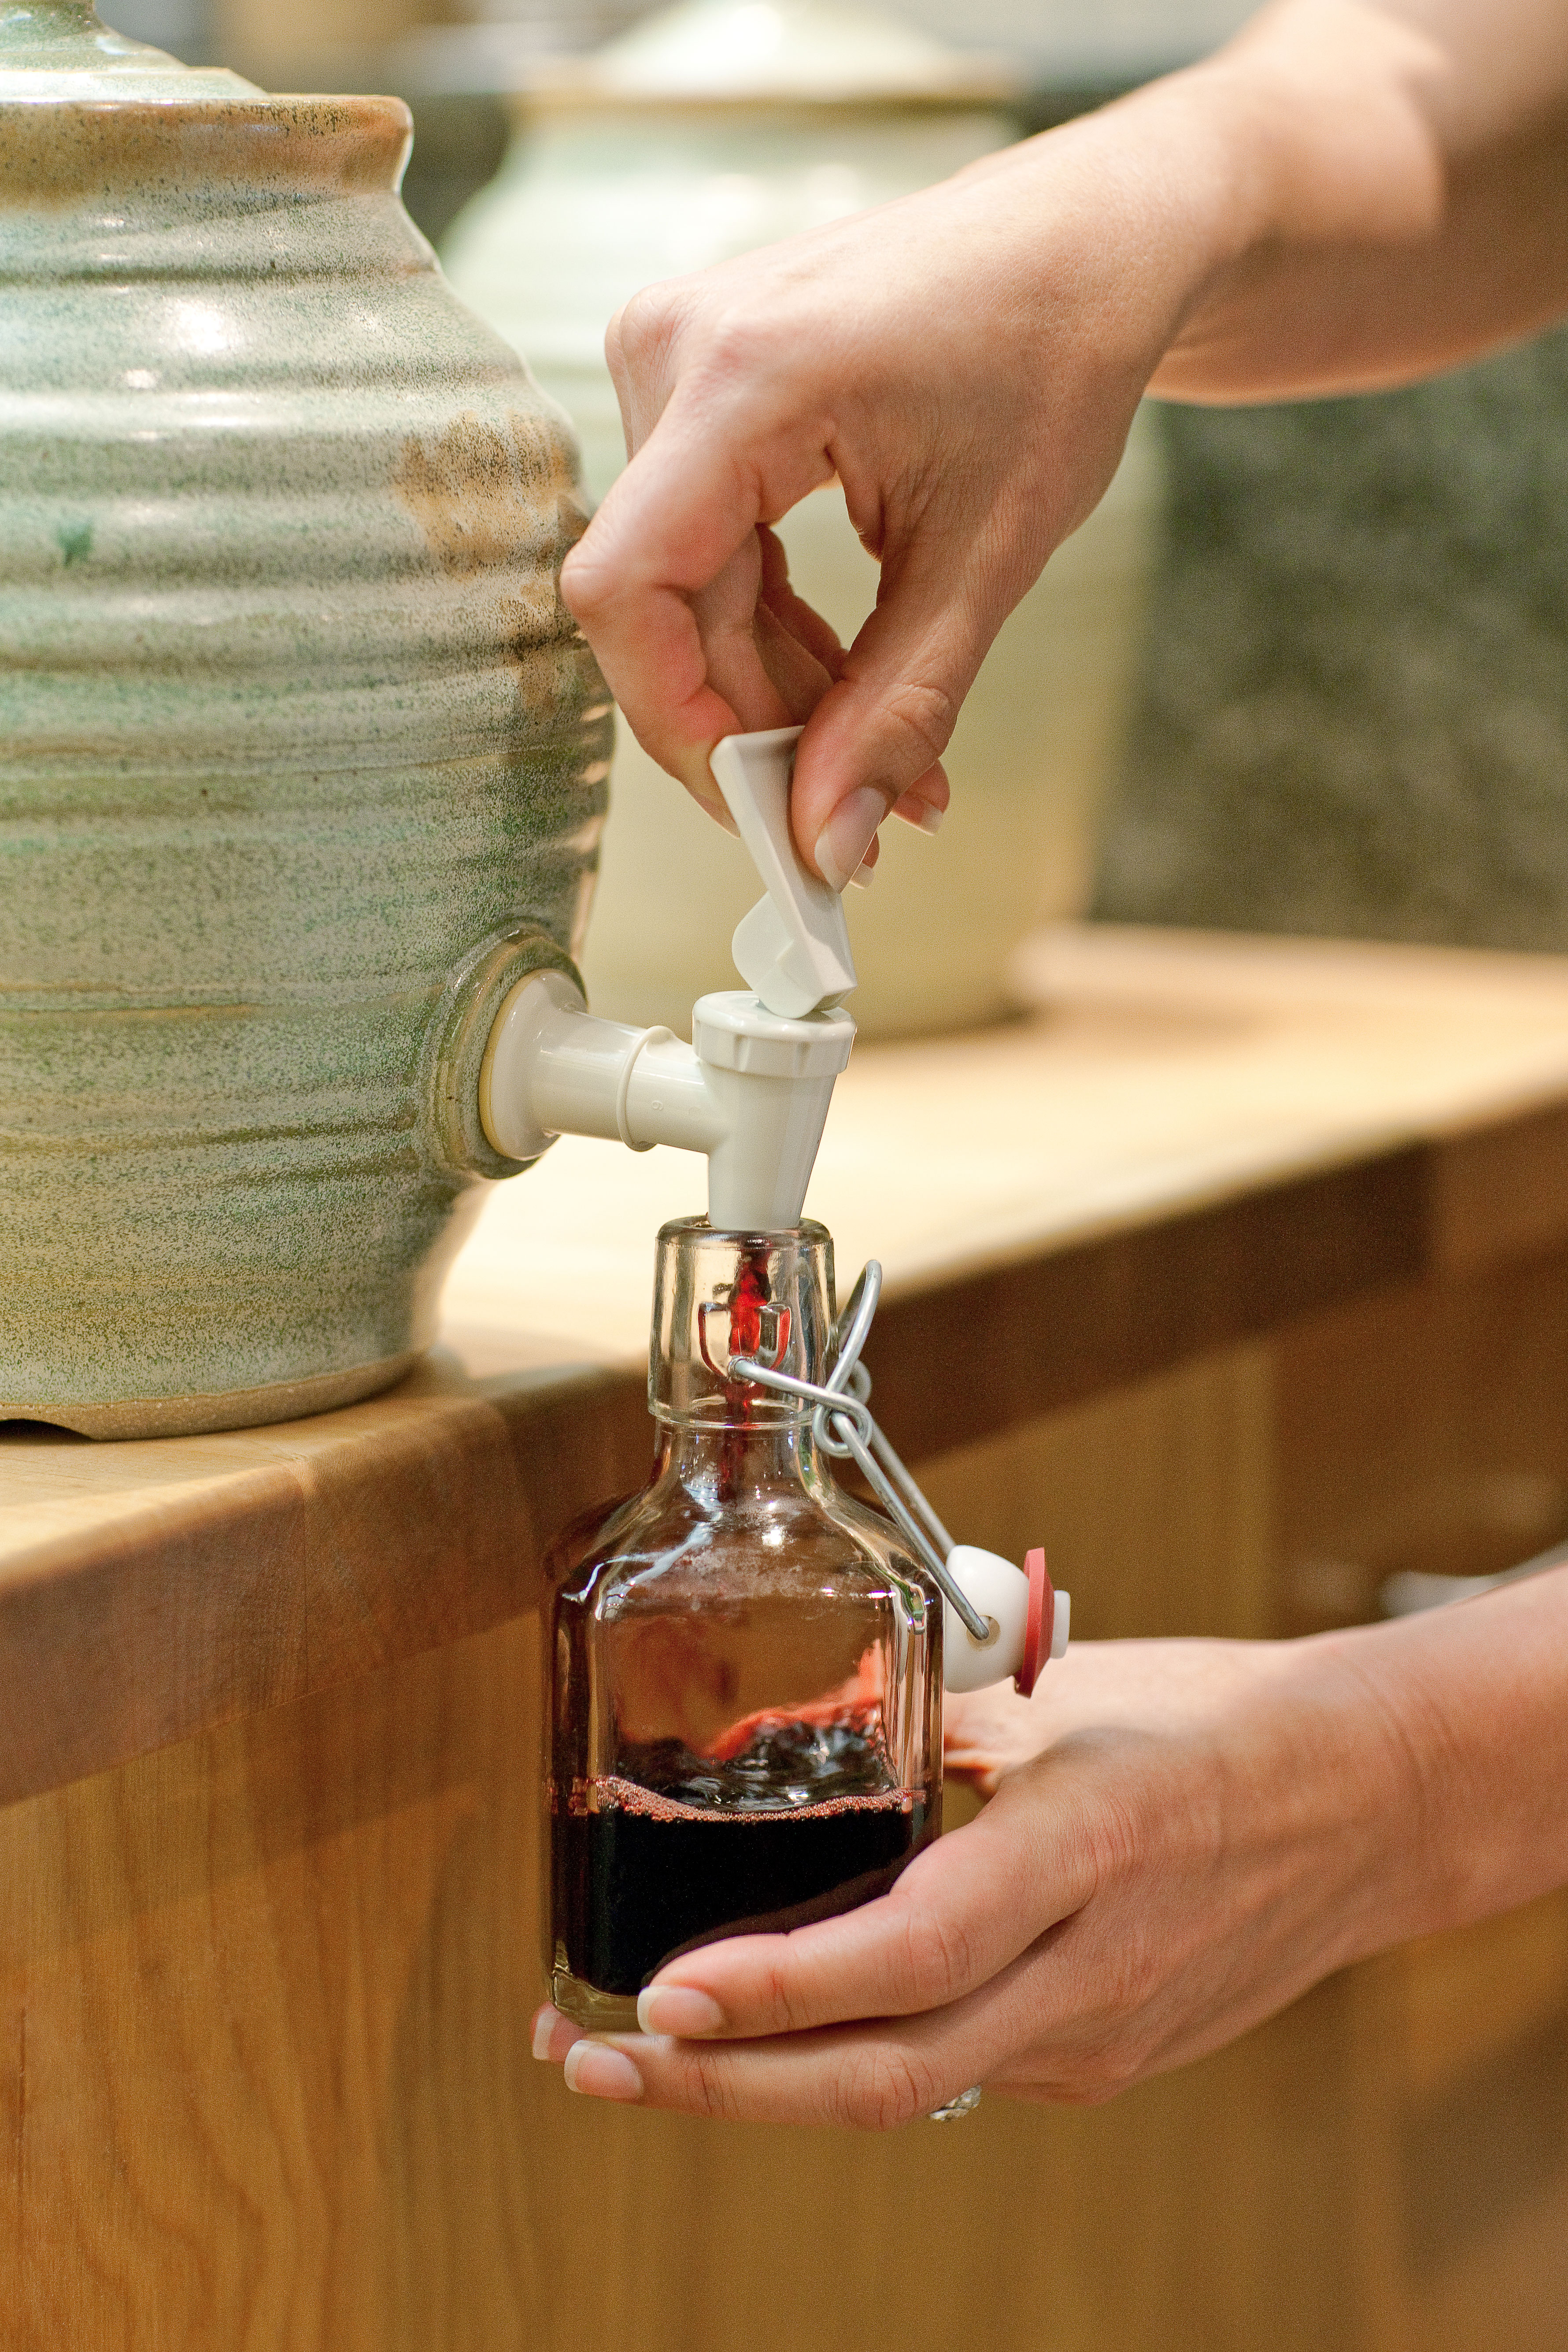 How to Make Vinegar